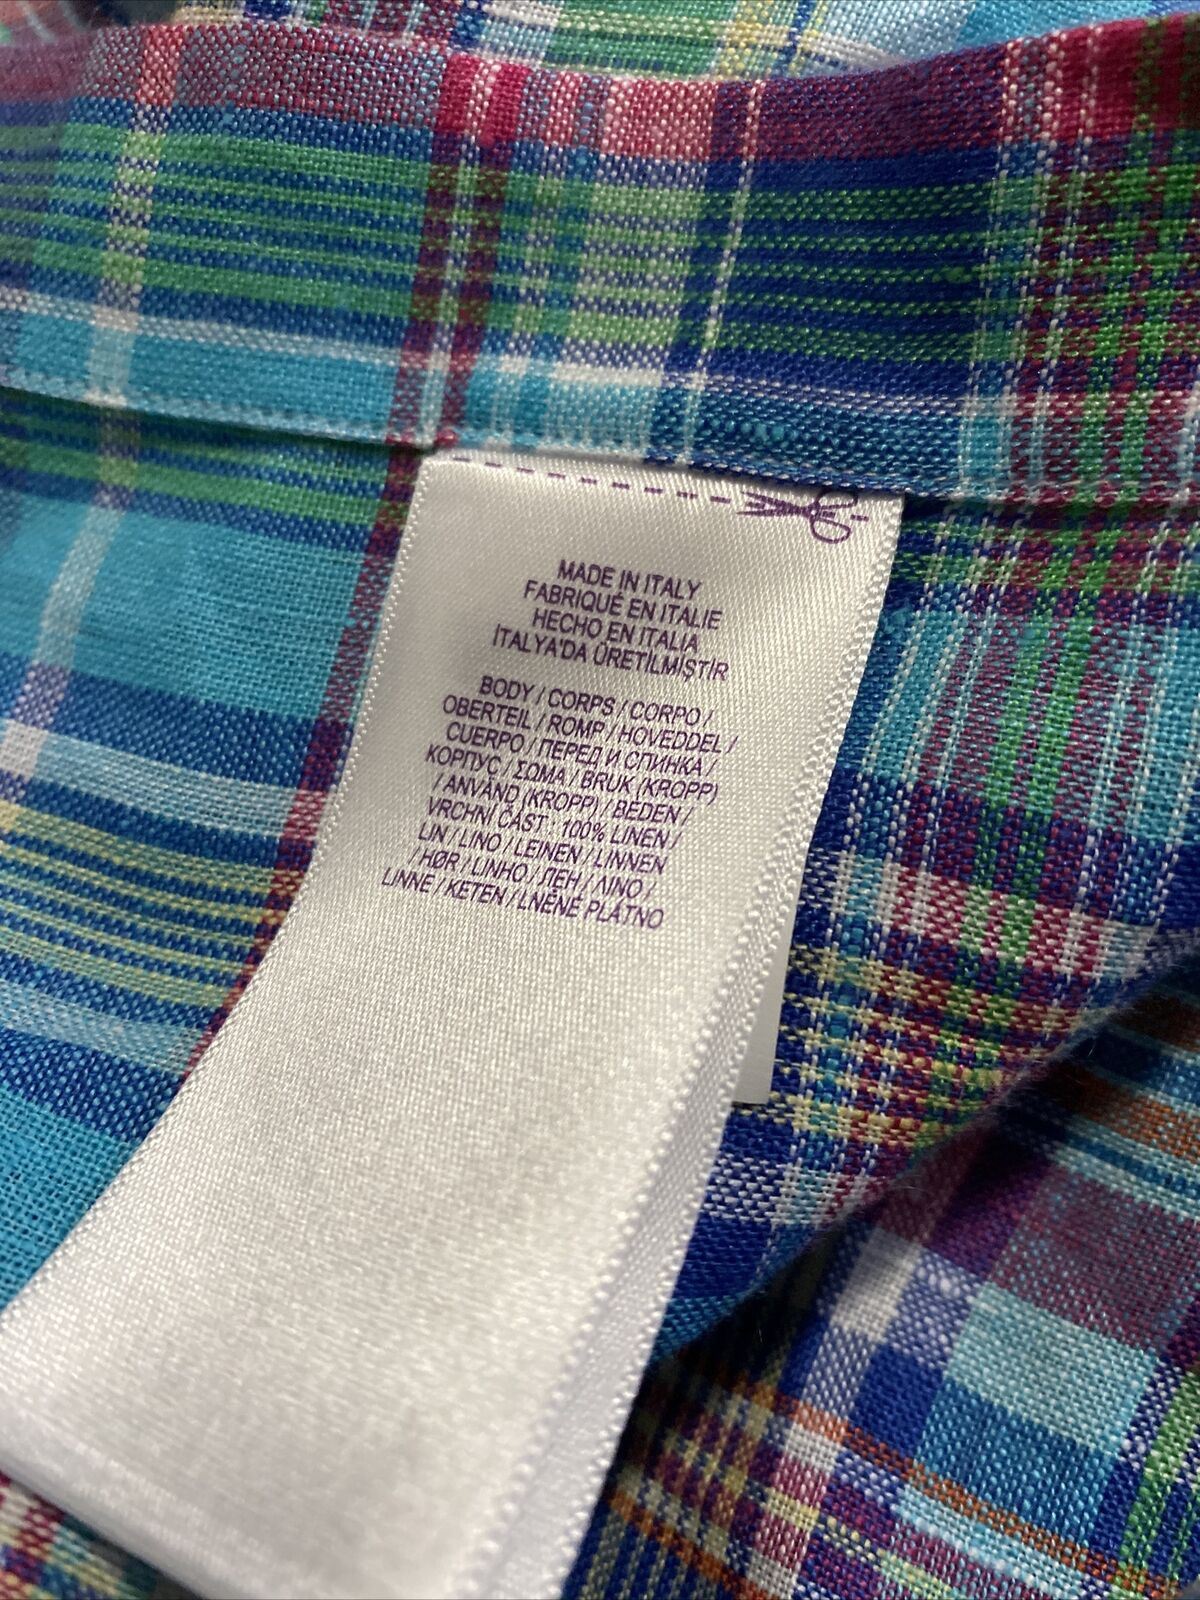 NWT $495 Ralph Lauren Purple Label Men Linen Shirt Blue/Red/Green XL Italy